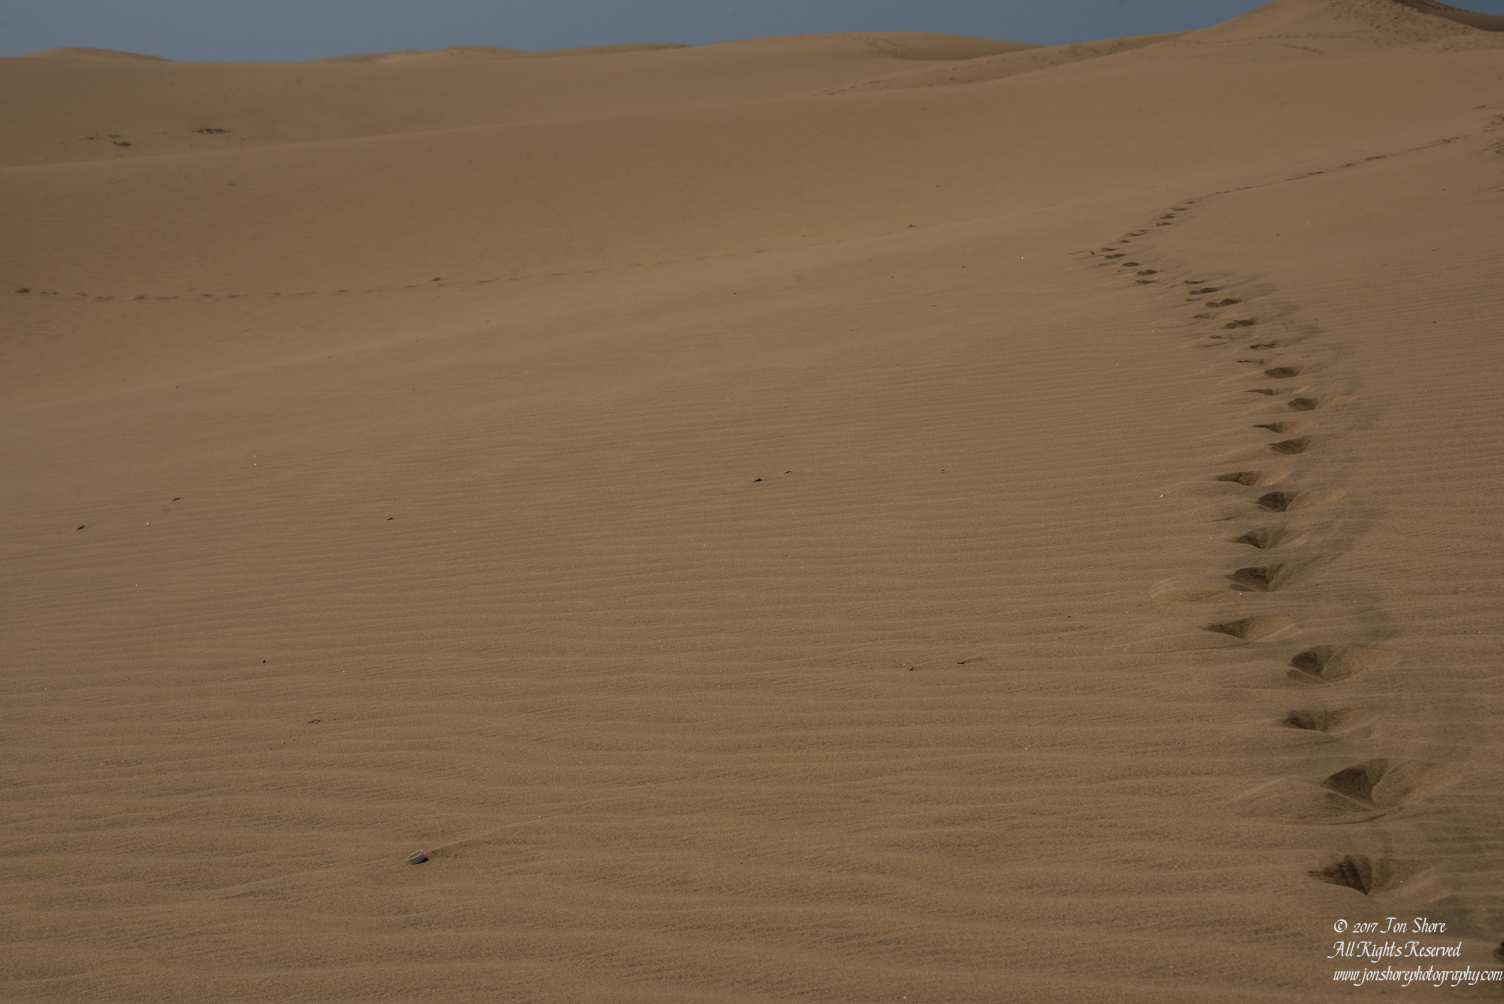 Desert at Maspalomas, Gran Canaria. Nikkor 100mm